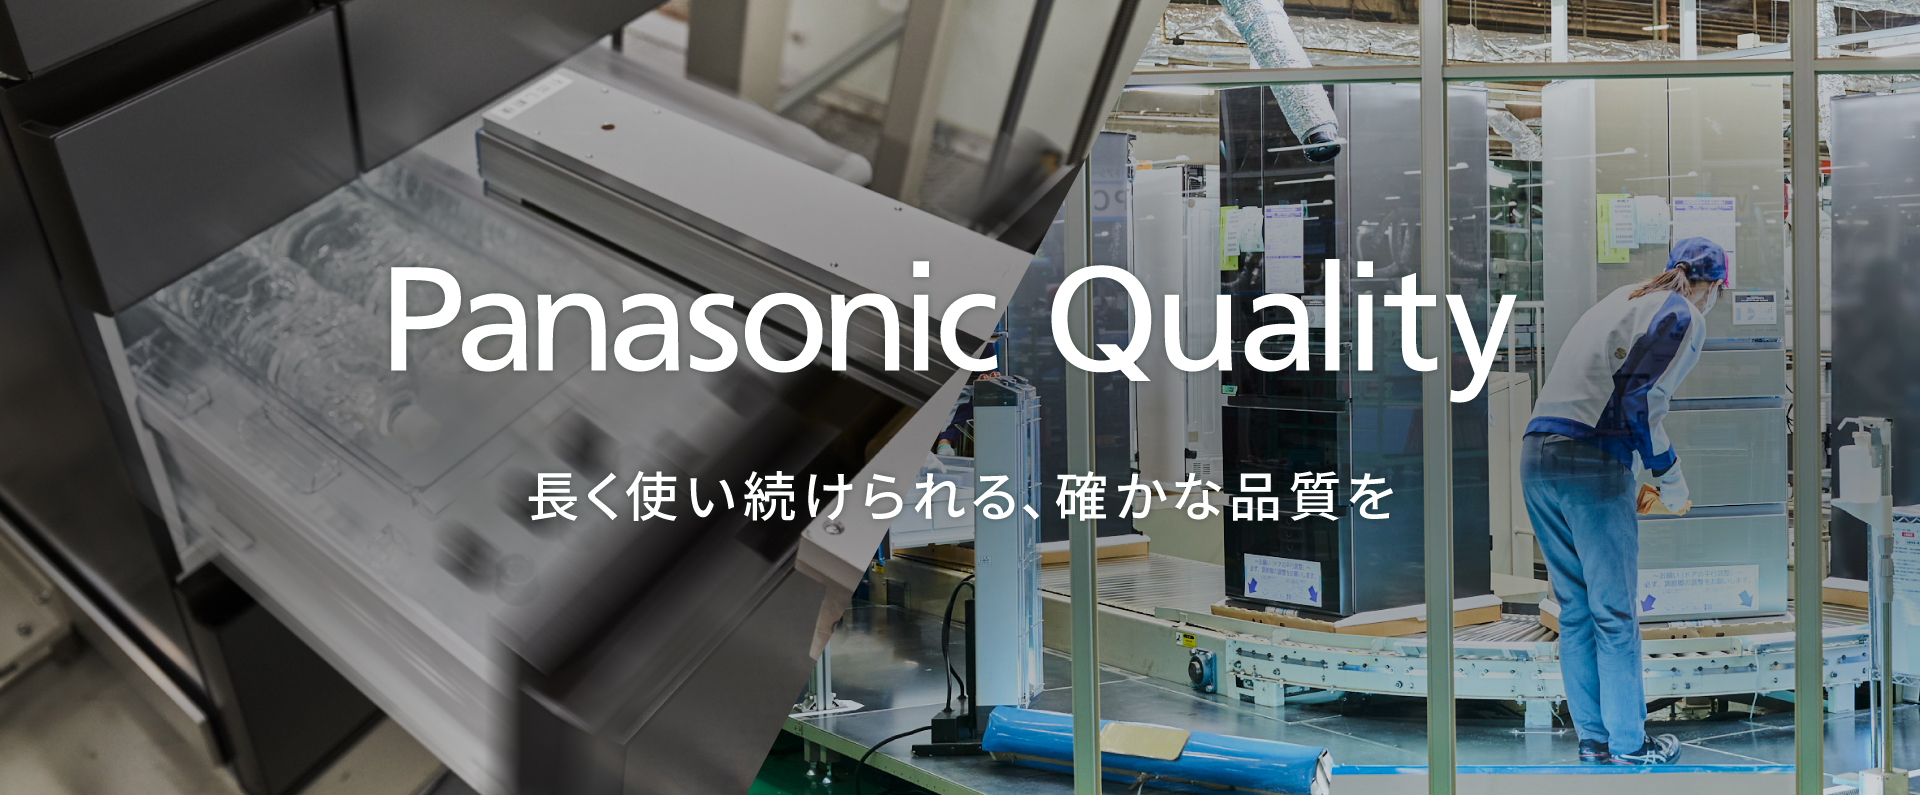 「Panasonic Quality 長く使い続けられる、確かな品質を」のメインビジュアルです。